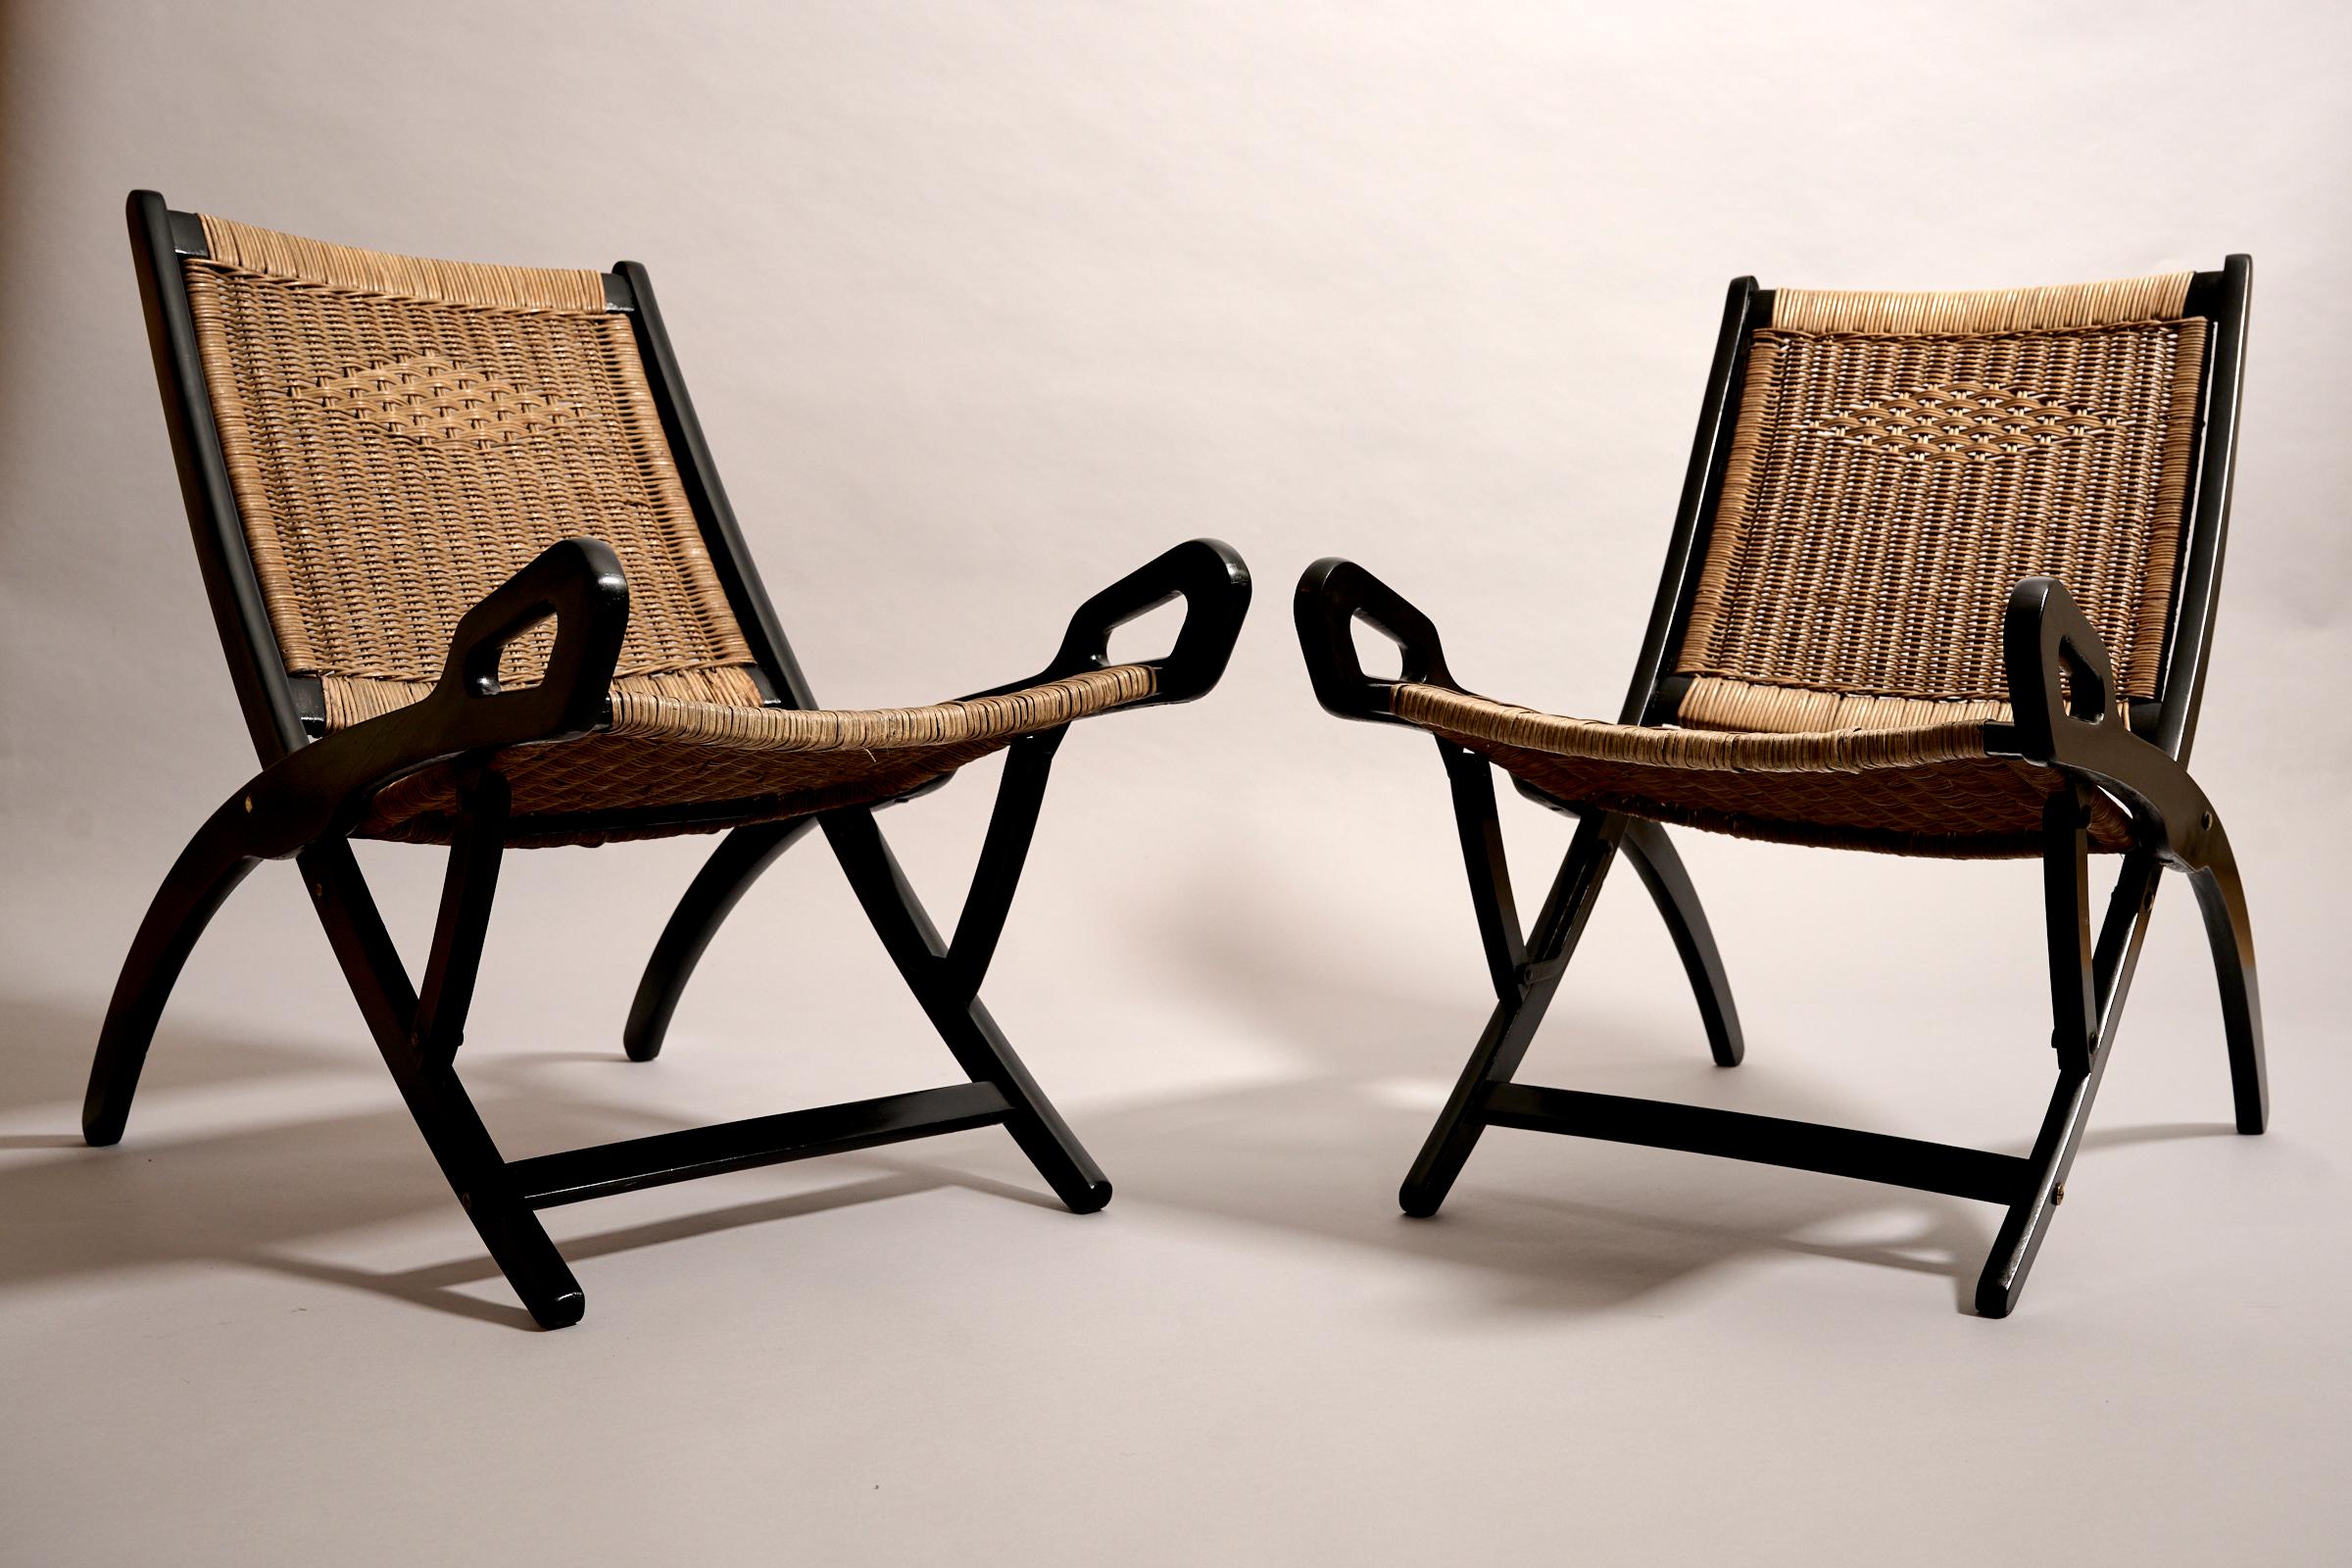 Paire originale de chaises pliantes en rotin de Gio Ponti. pour Fratelli Reguitti. Italie c1950s

Bois ébonisé et rotin. 

Restauré. Entièrement fonctionnel. Étonnamment confortable !
